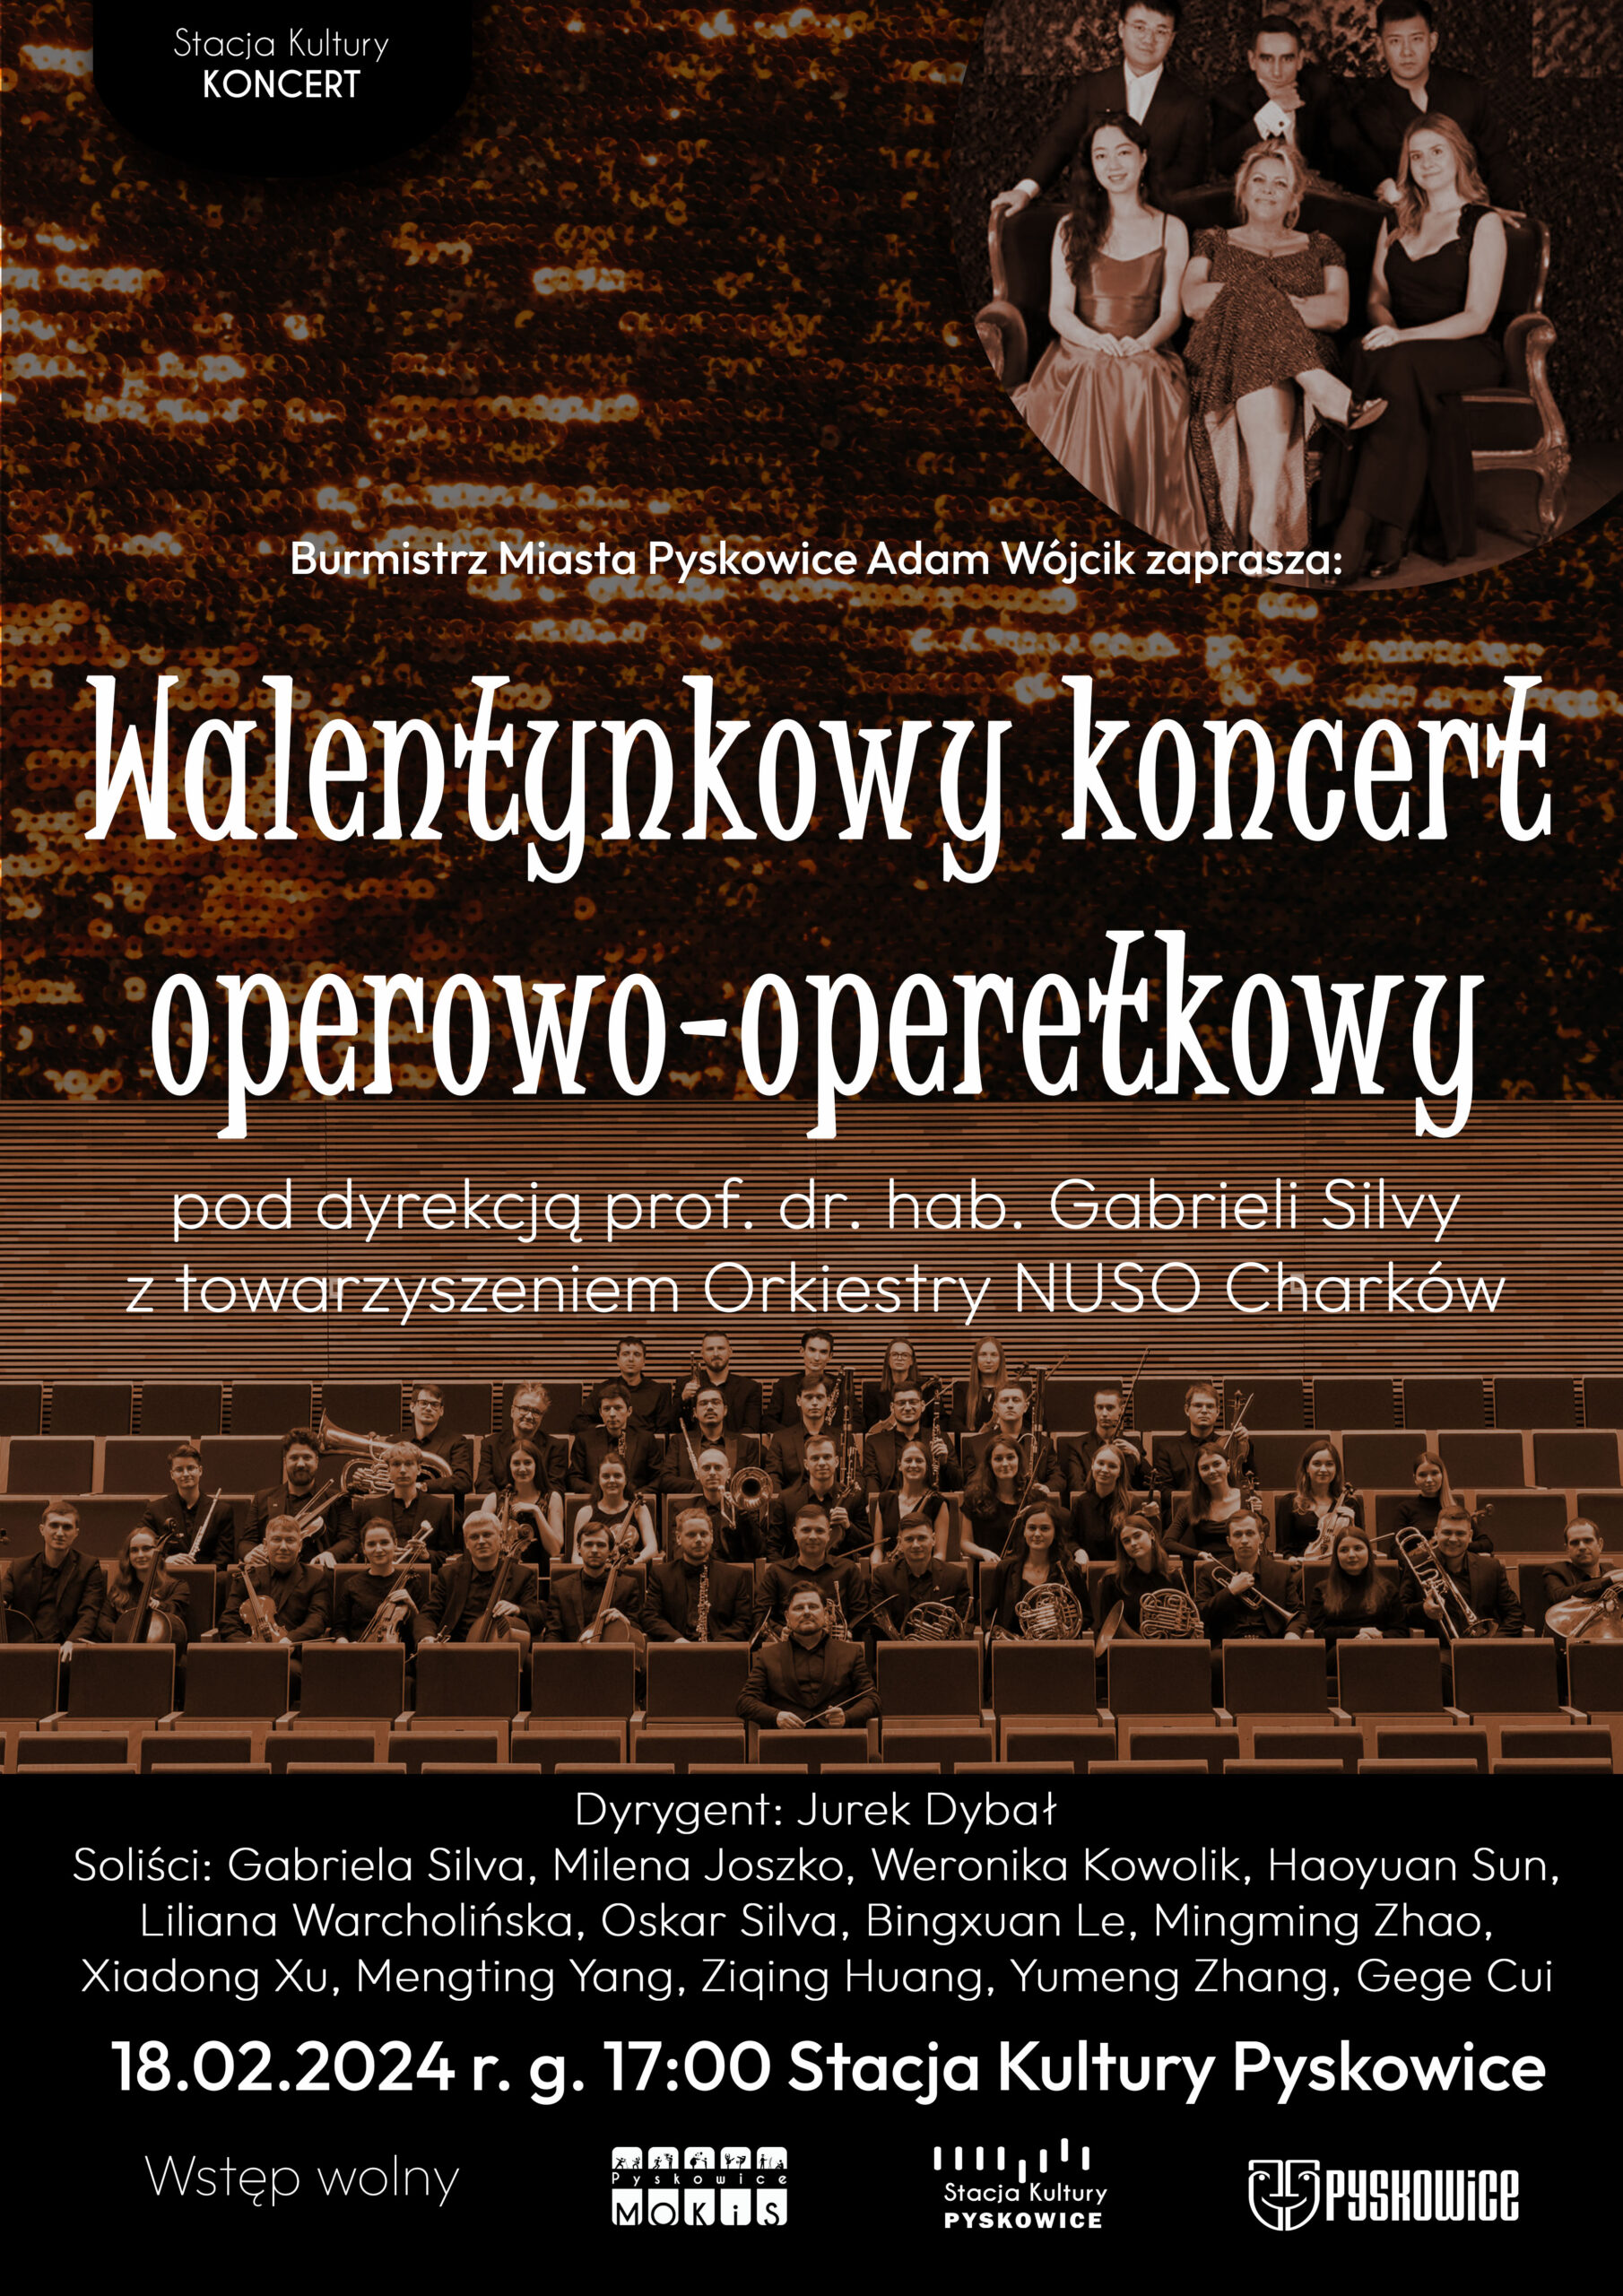 Plakat promujący walentynkowy koncert operowo-operetkowy